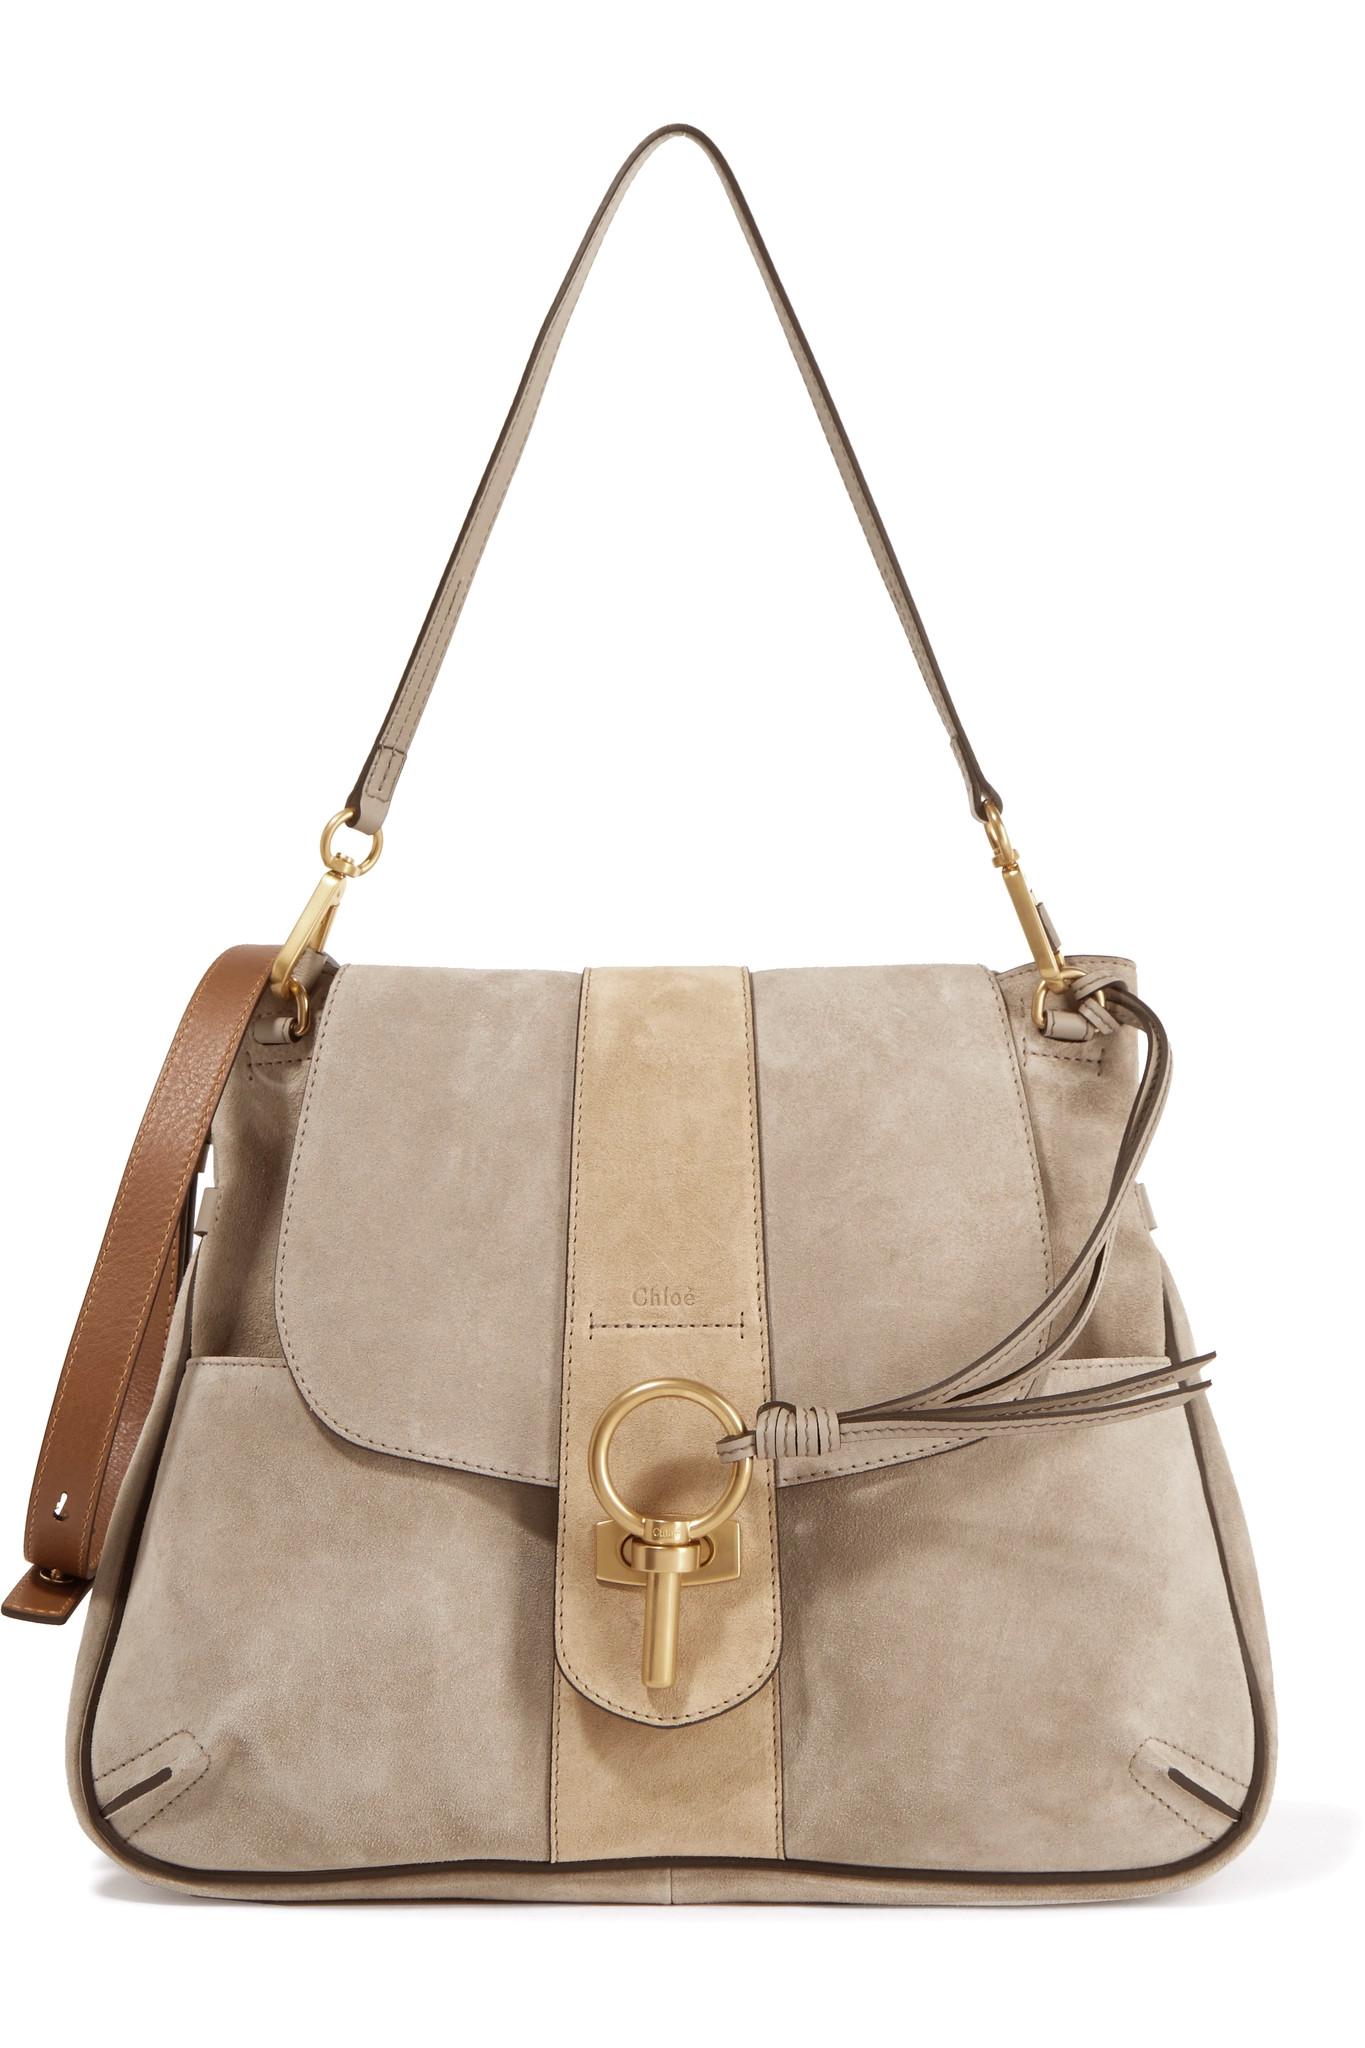 5 Urban Satchel Louis Vuitton Bag #150,000  Most expensive handbags,  Expensive handbags, Most expensive bag